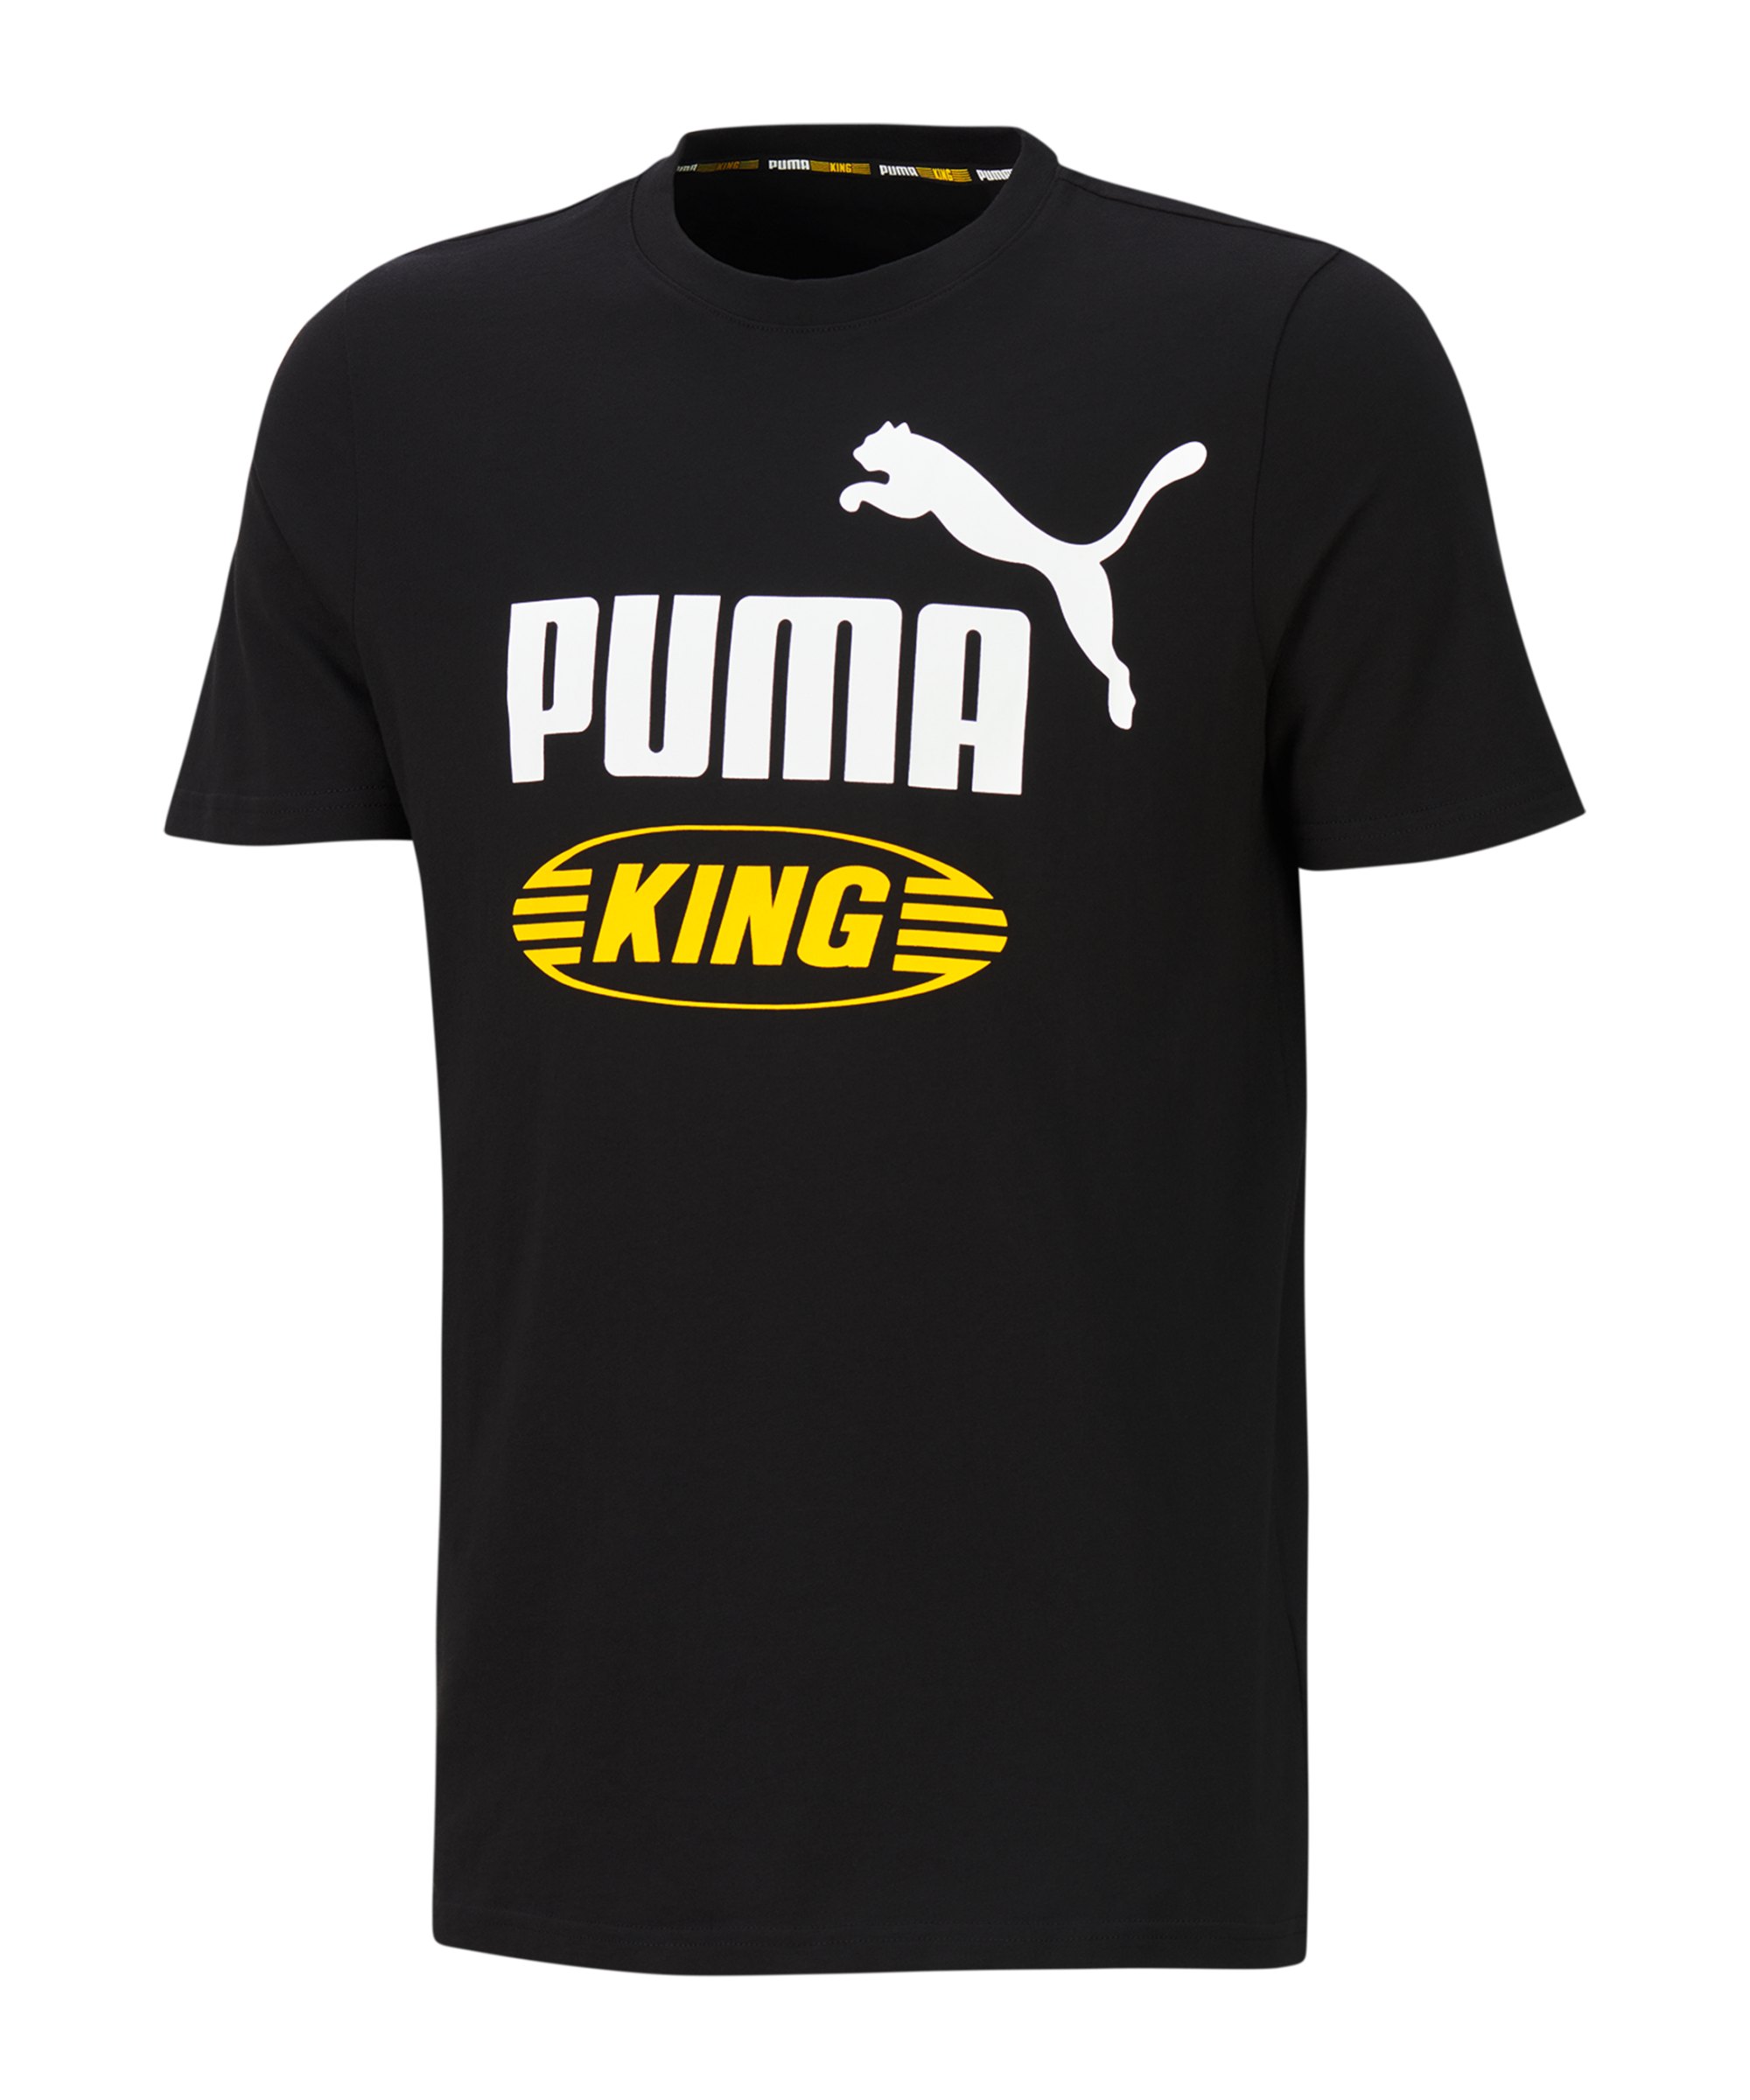 PUMA Iconic KING T-Shirt Schwarz F01 - schwarz